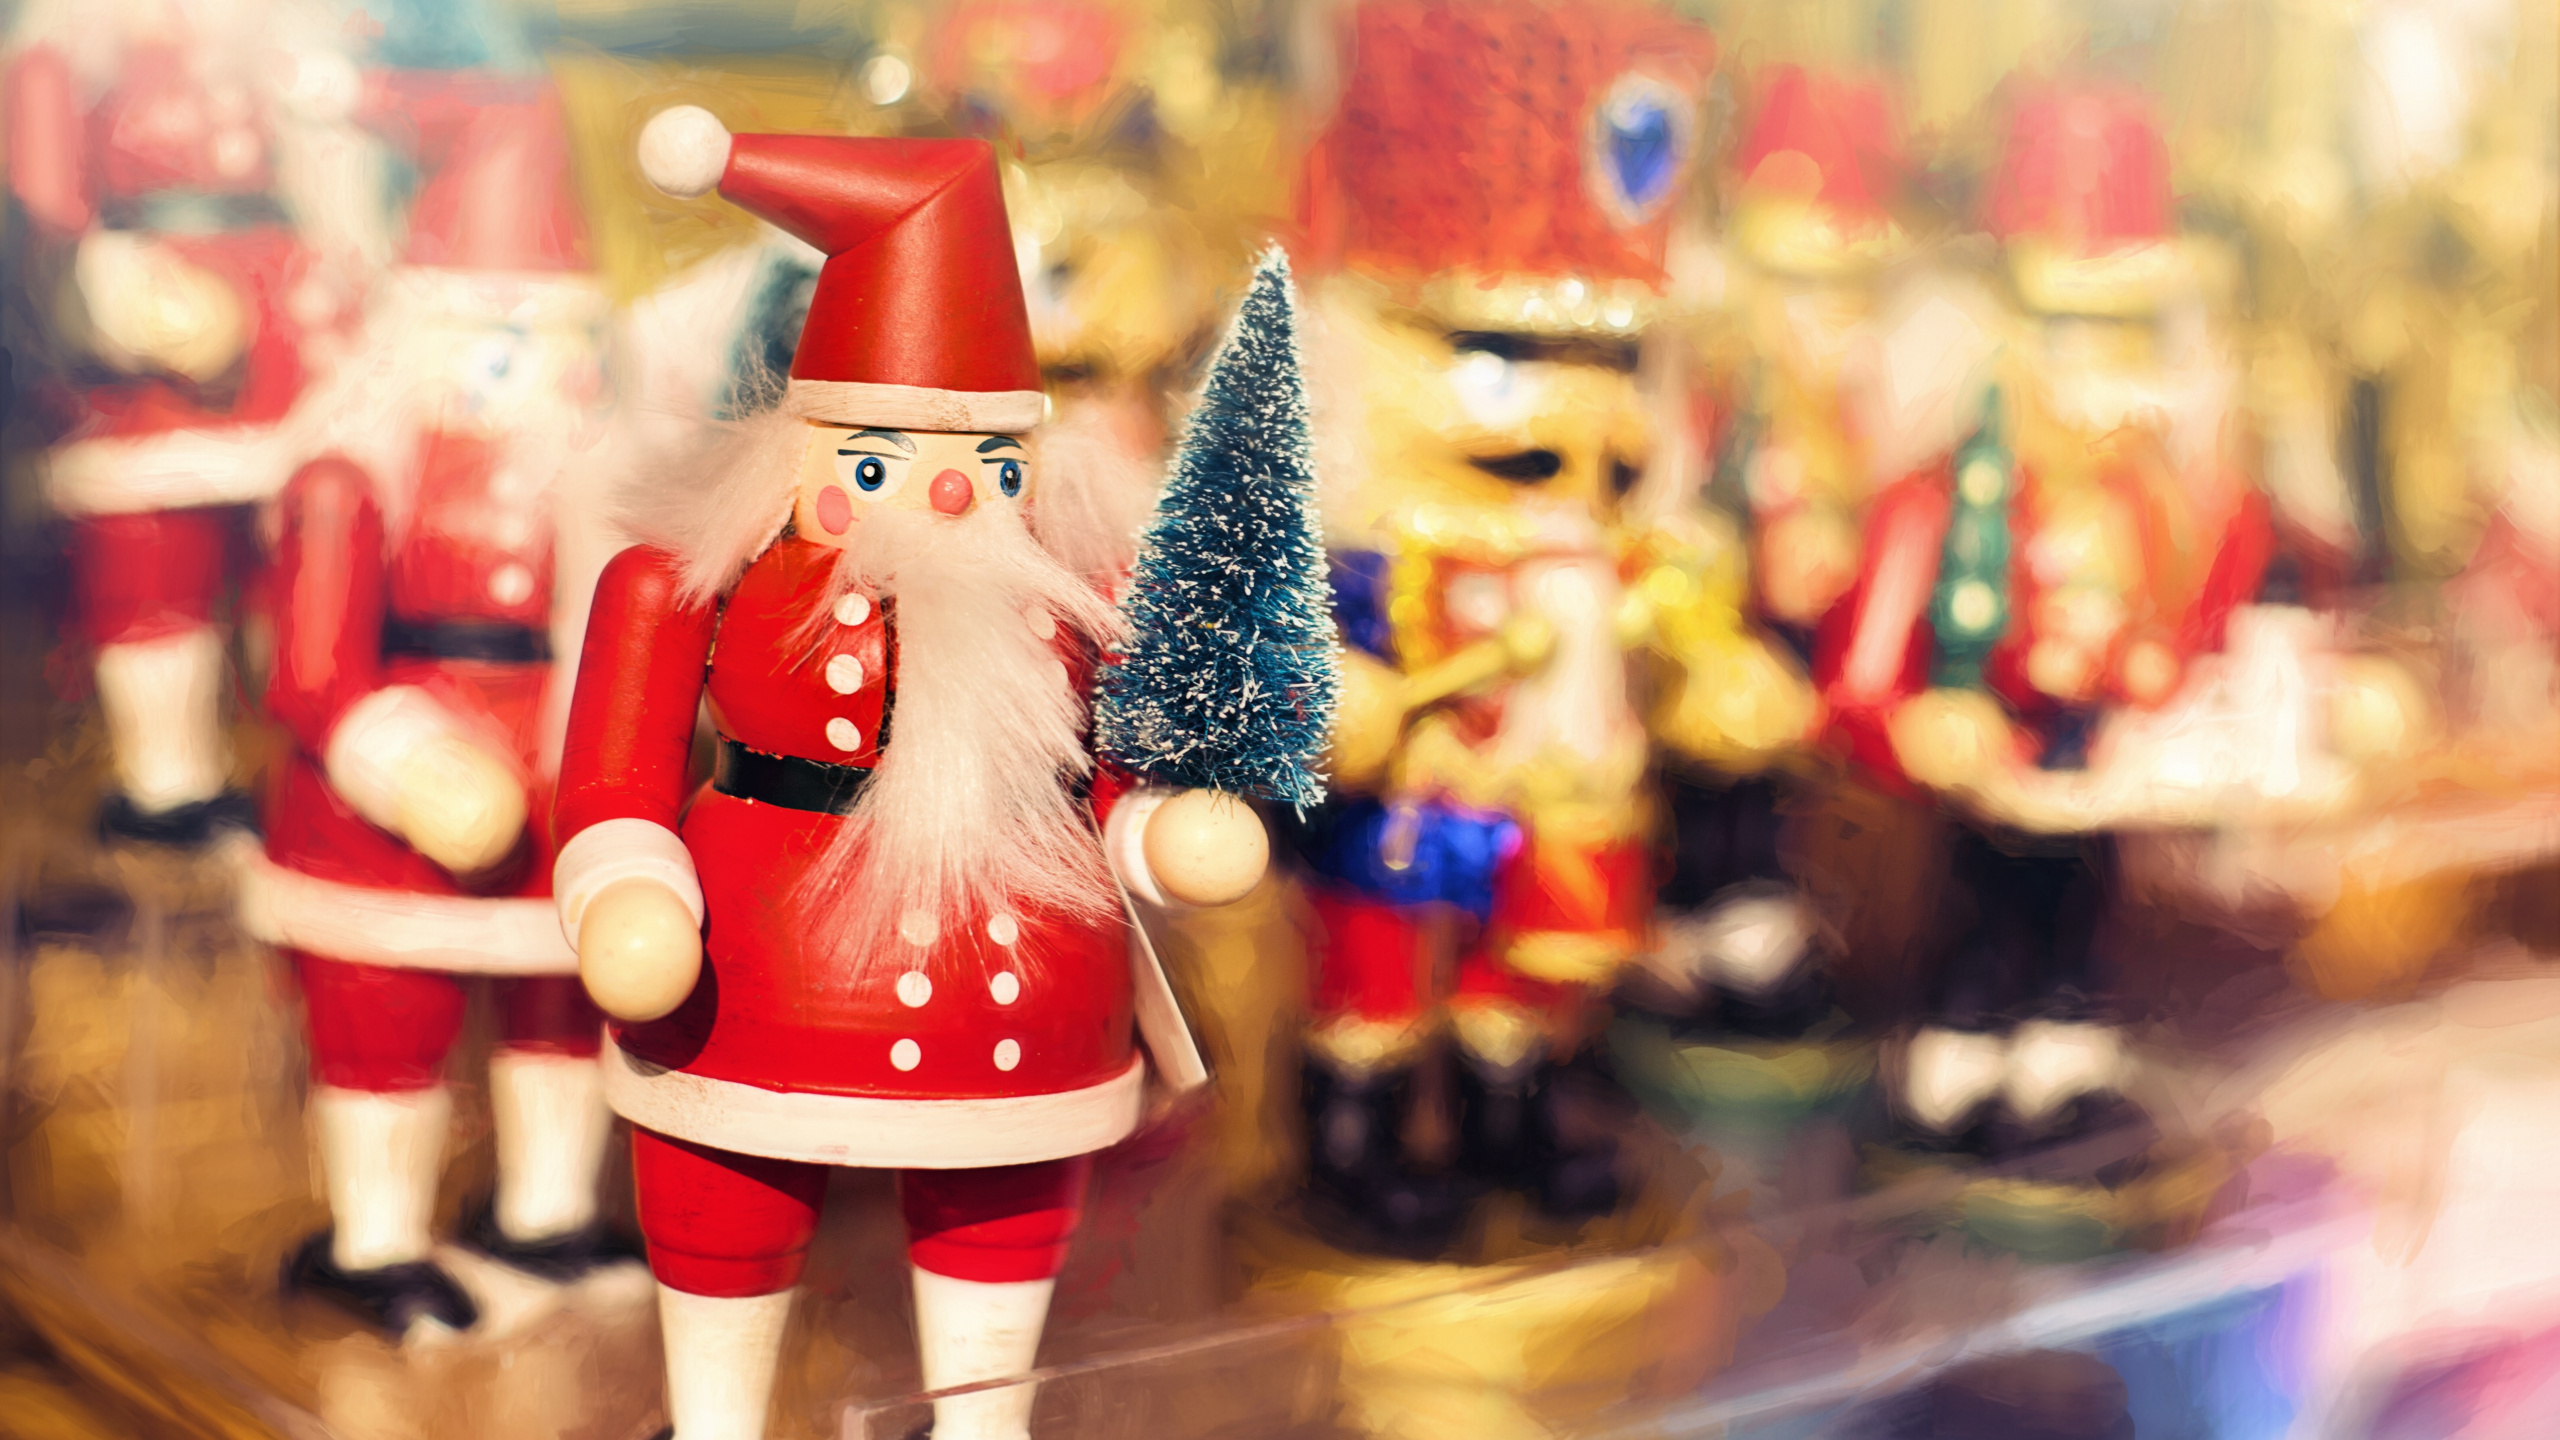 Weihnachten, Weihnachtsmann, Nussknacker, Spielzeug, Christmas Ornament. Wallpaper in 2560x1440 Resolution